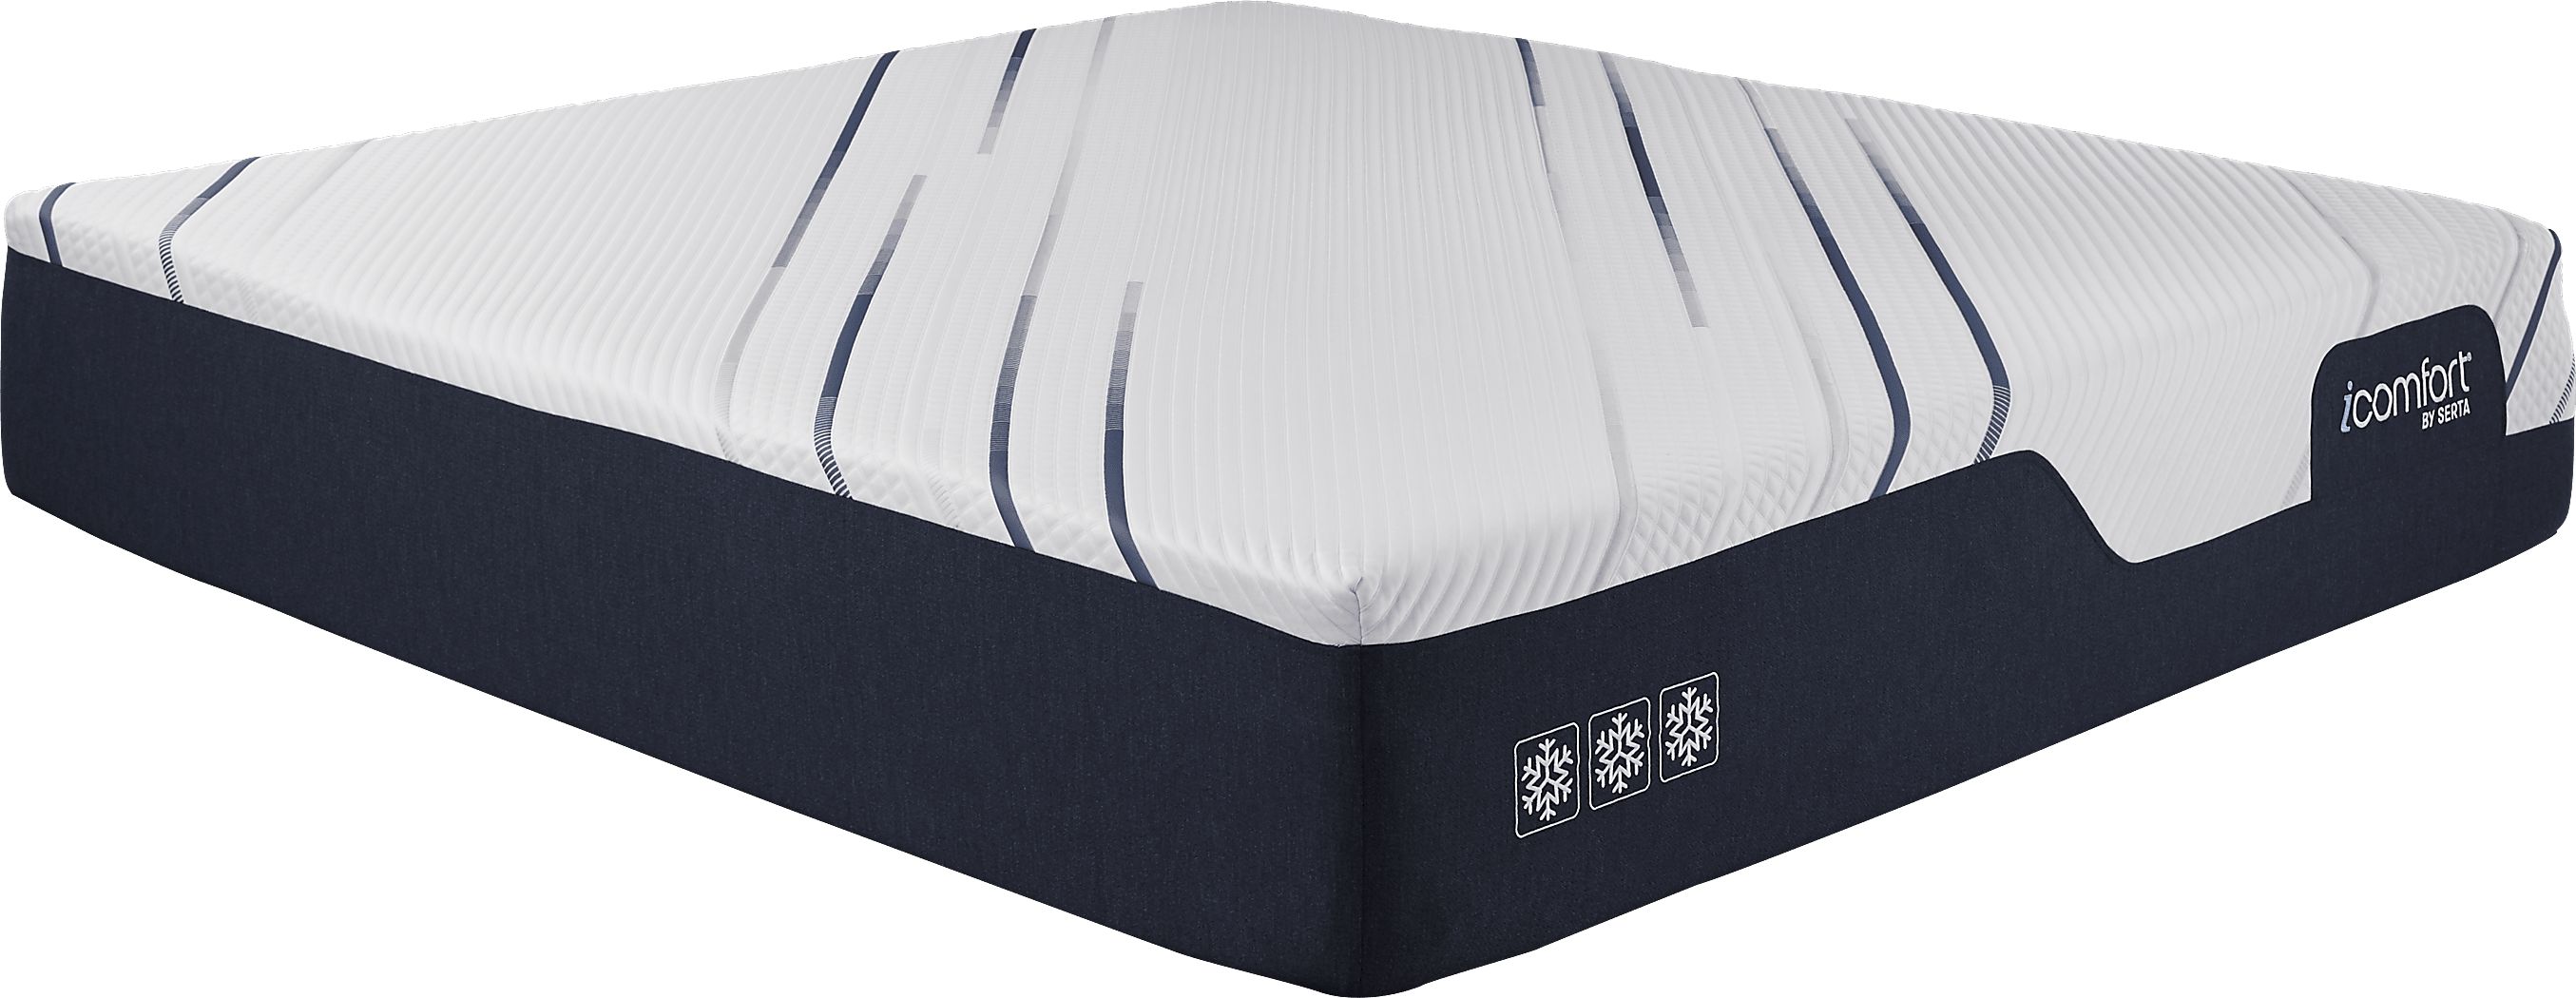 icomfort king mattress dimensions